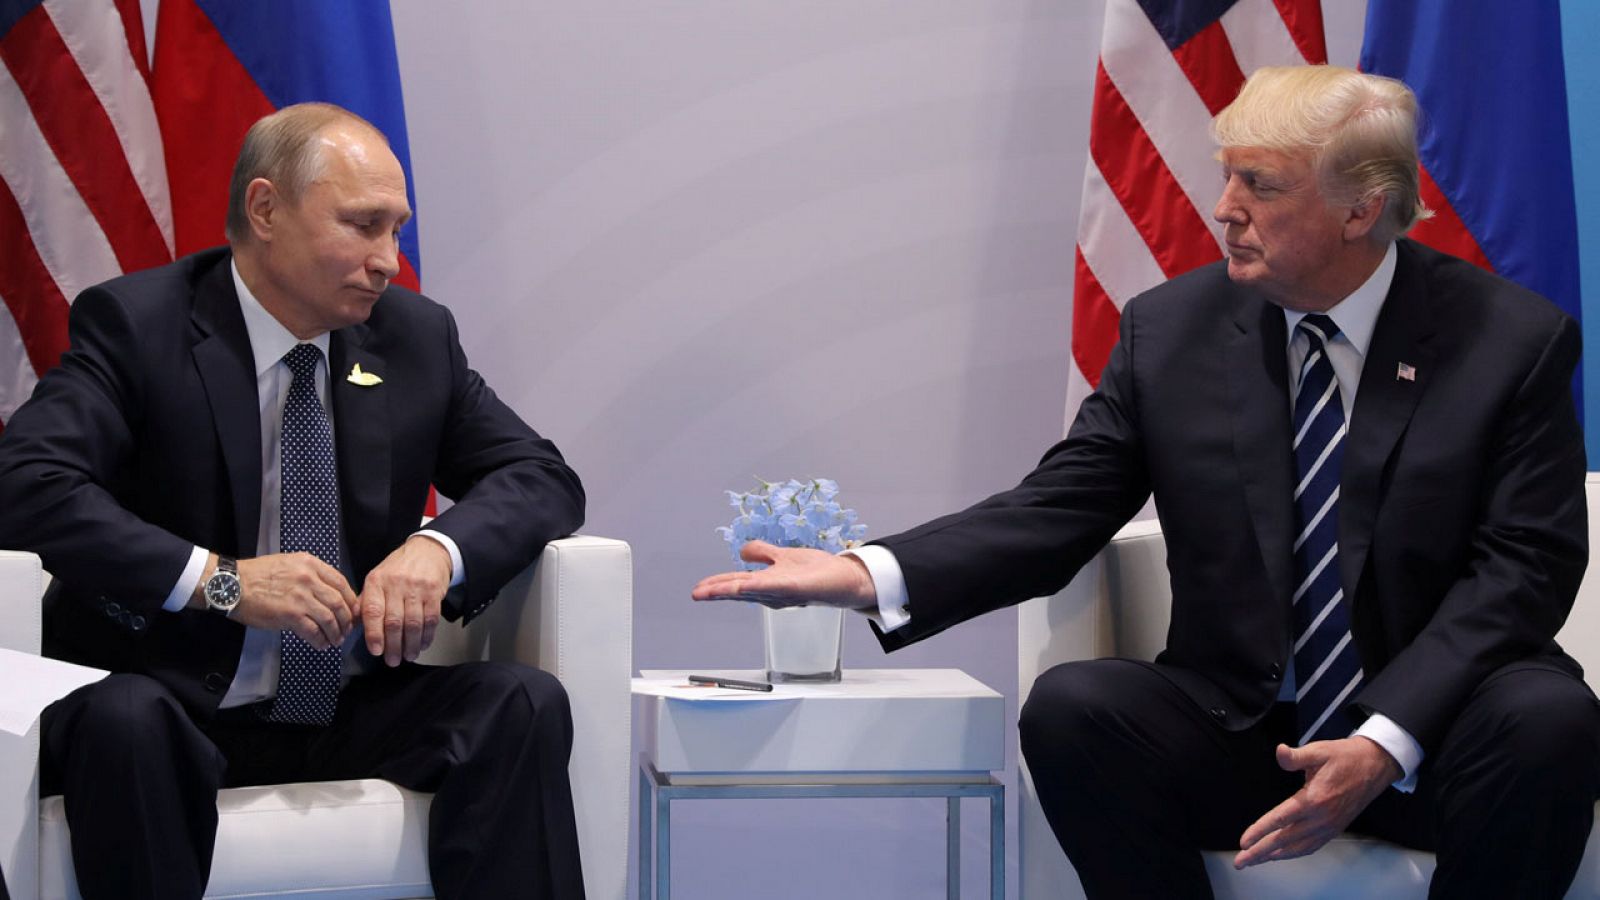 Vladímir Putin y Donald Trump se saludan durante su primera reunión bilateral en la cumbre del G20 en Hamburgo.